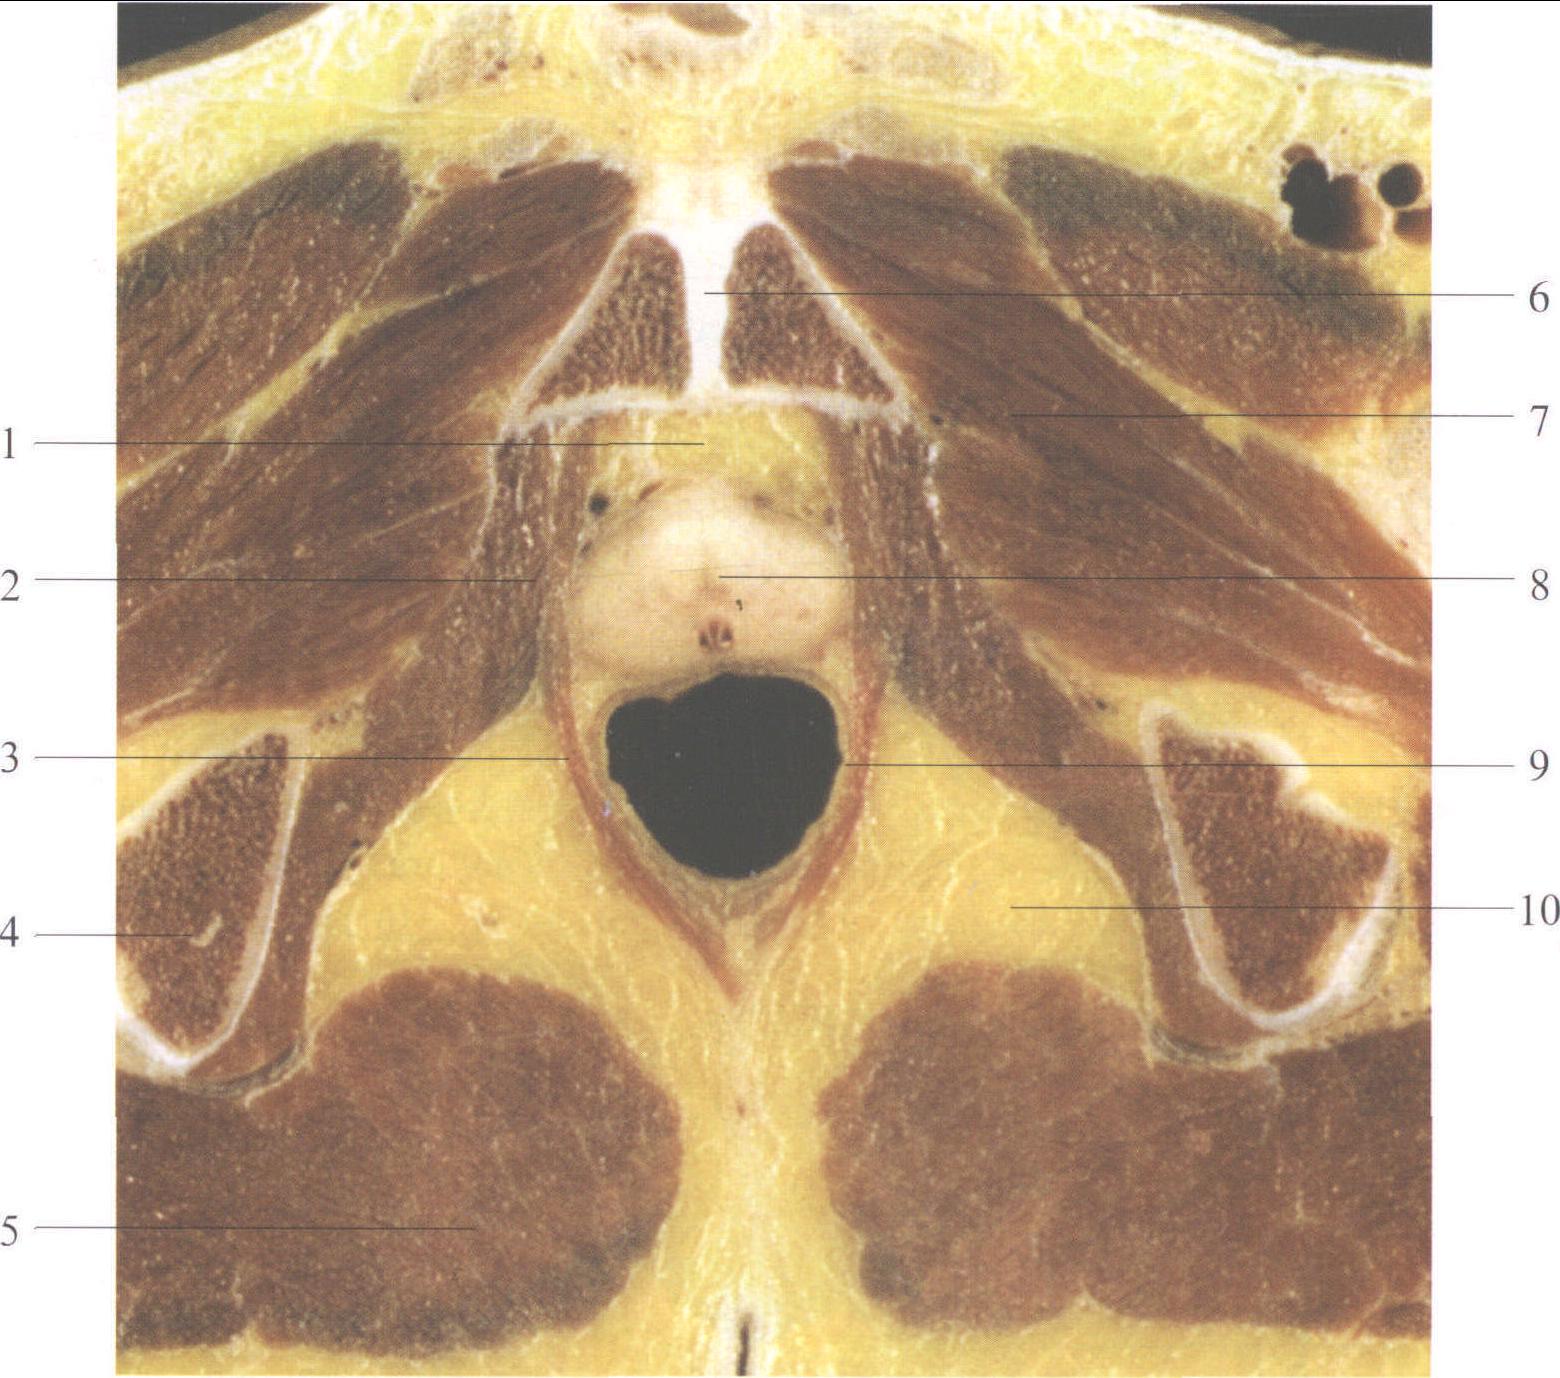 图4-12 前列腺和精囊的结构-泌尿外科临床解剖学-医学